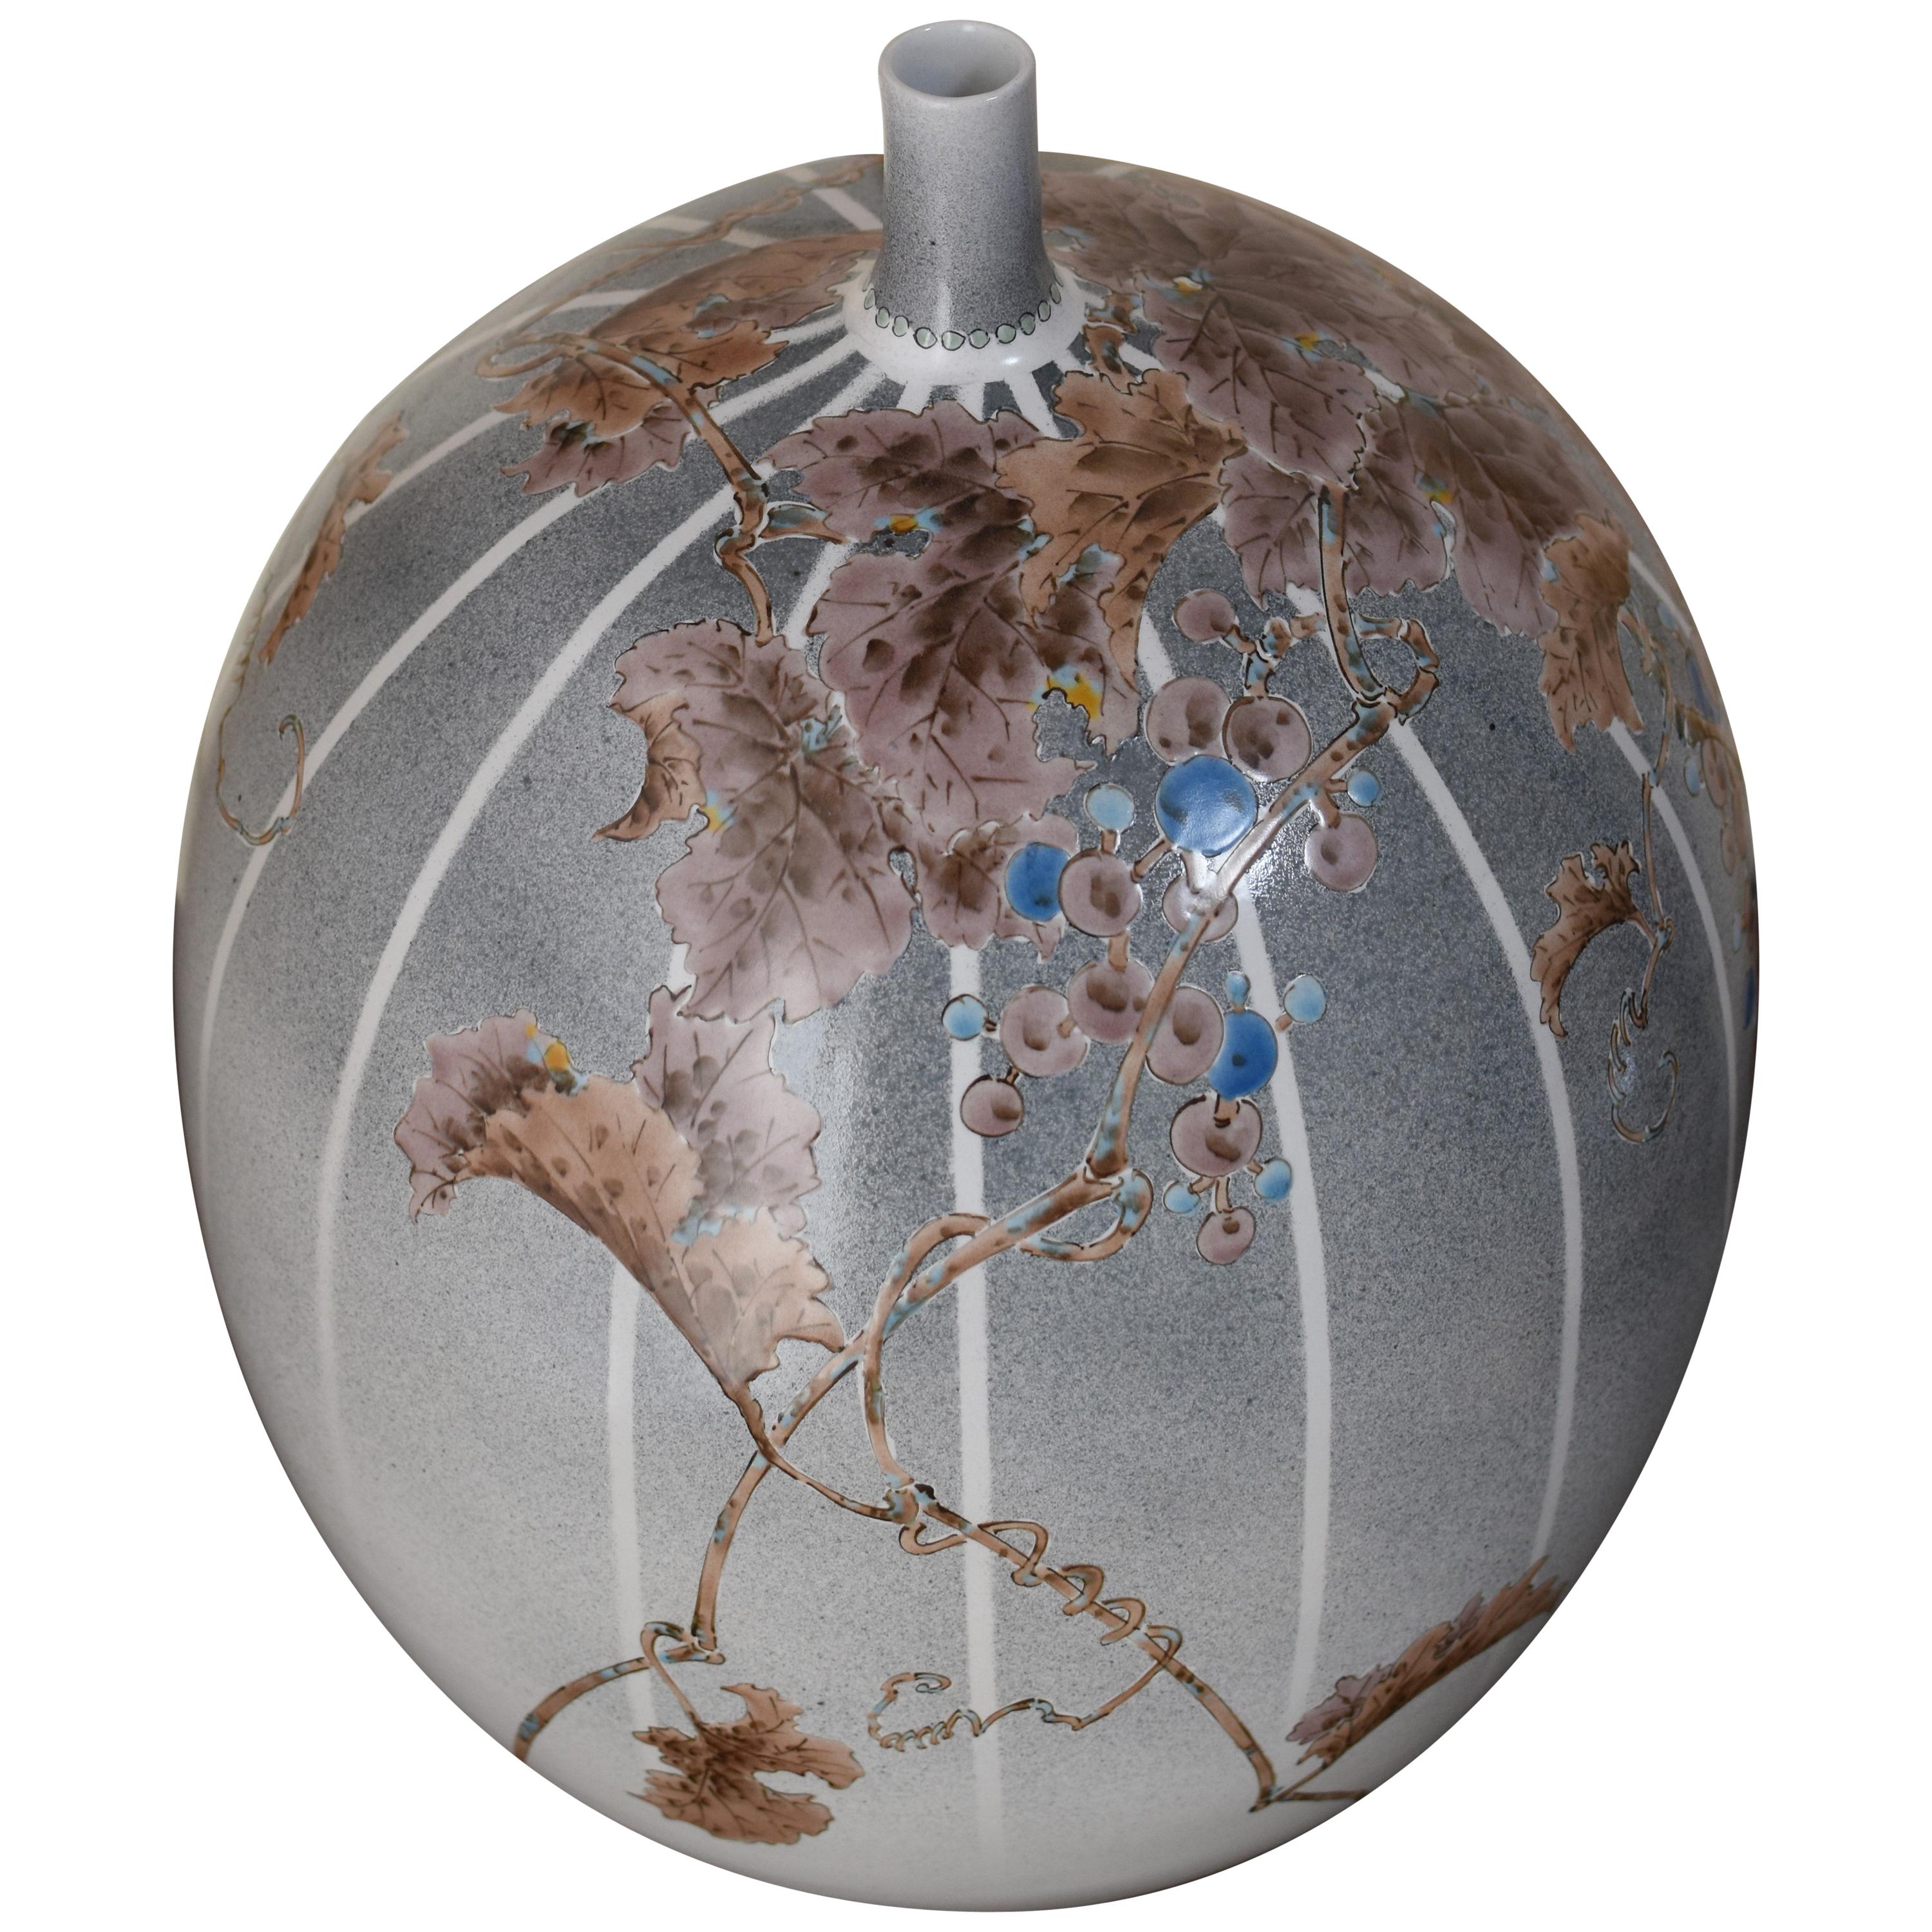 Außergewöhnliche zeitgenössische dekorative japanische Porzellanvase, atemberaubend handbemalt in Braun auf einem atemberaubenden eiförmigen Körper in schönem Hintergrund mit Streifen auf einer blau/grauen Abstufung. Es ist ein Meisterwerk eines